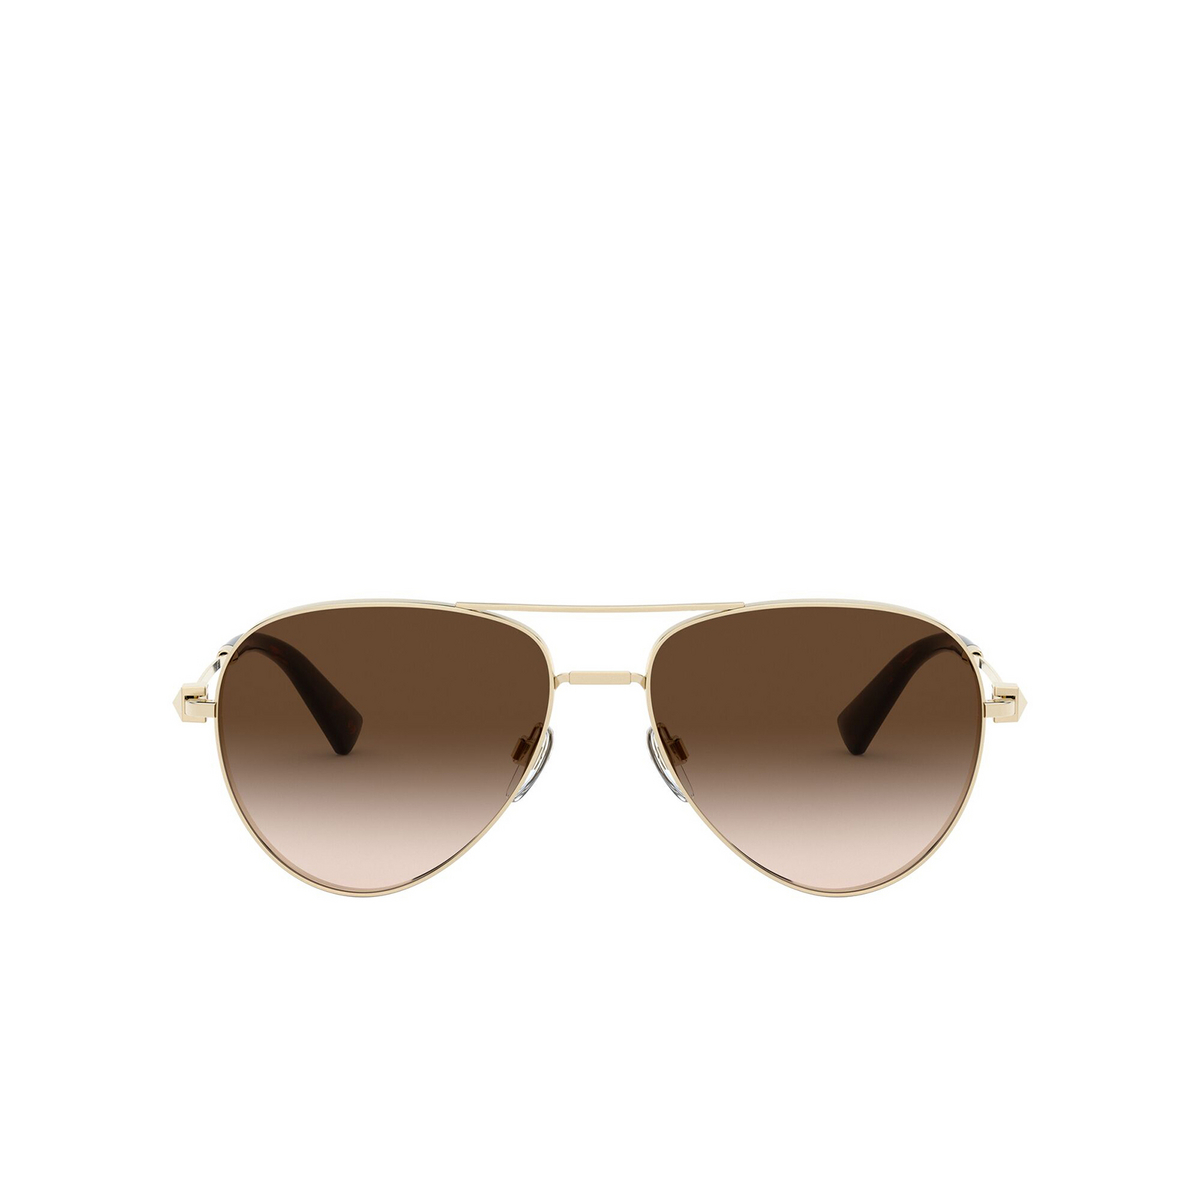 Valentino® Aviator Sunglasses: VA2034 color Pale Gold 300313 - front view.